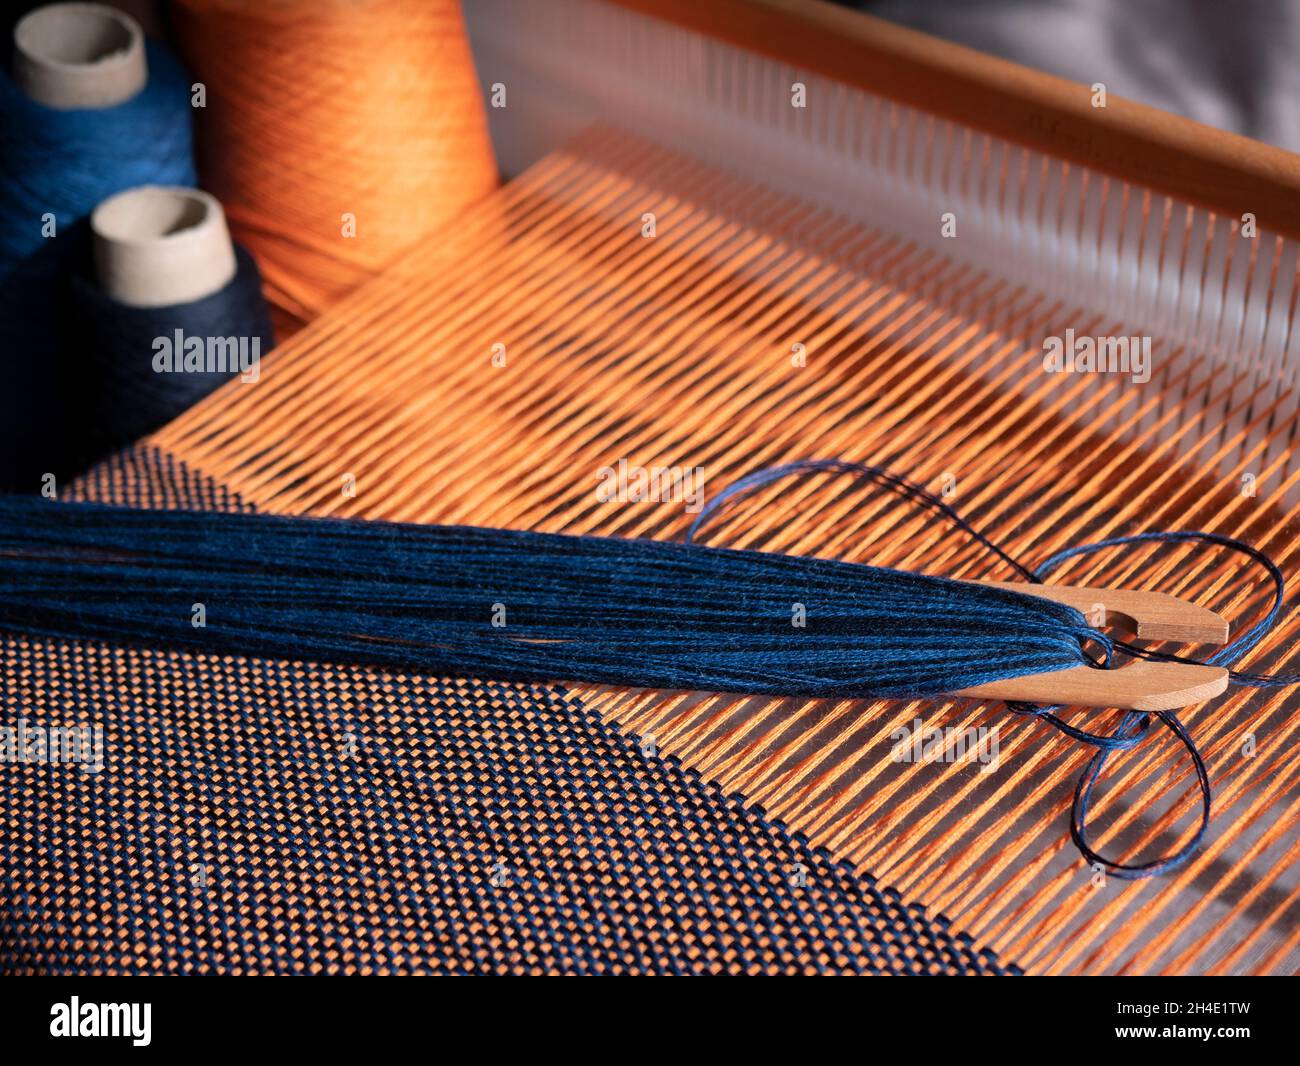 Création du textile bleu et orange à l'aide d'un métier à tisser.Métier à tisser en bois, navette et cônes avec fil.Vêtements fabriqués avec une main Banque D'Images